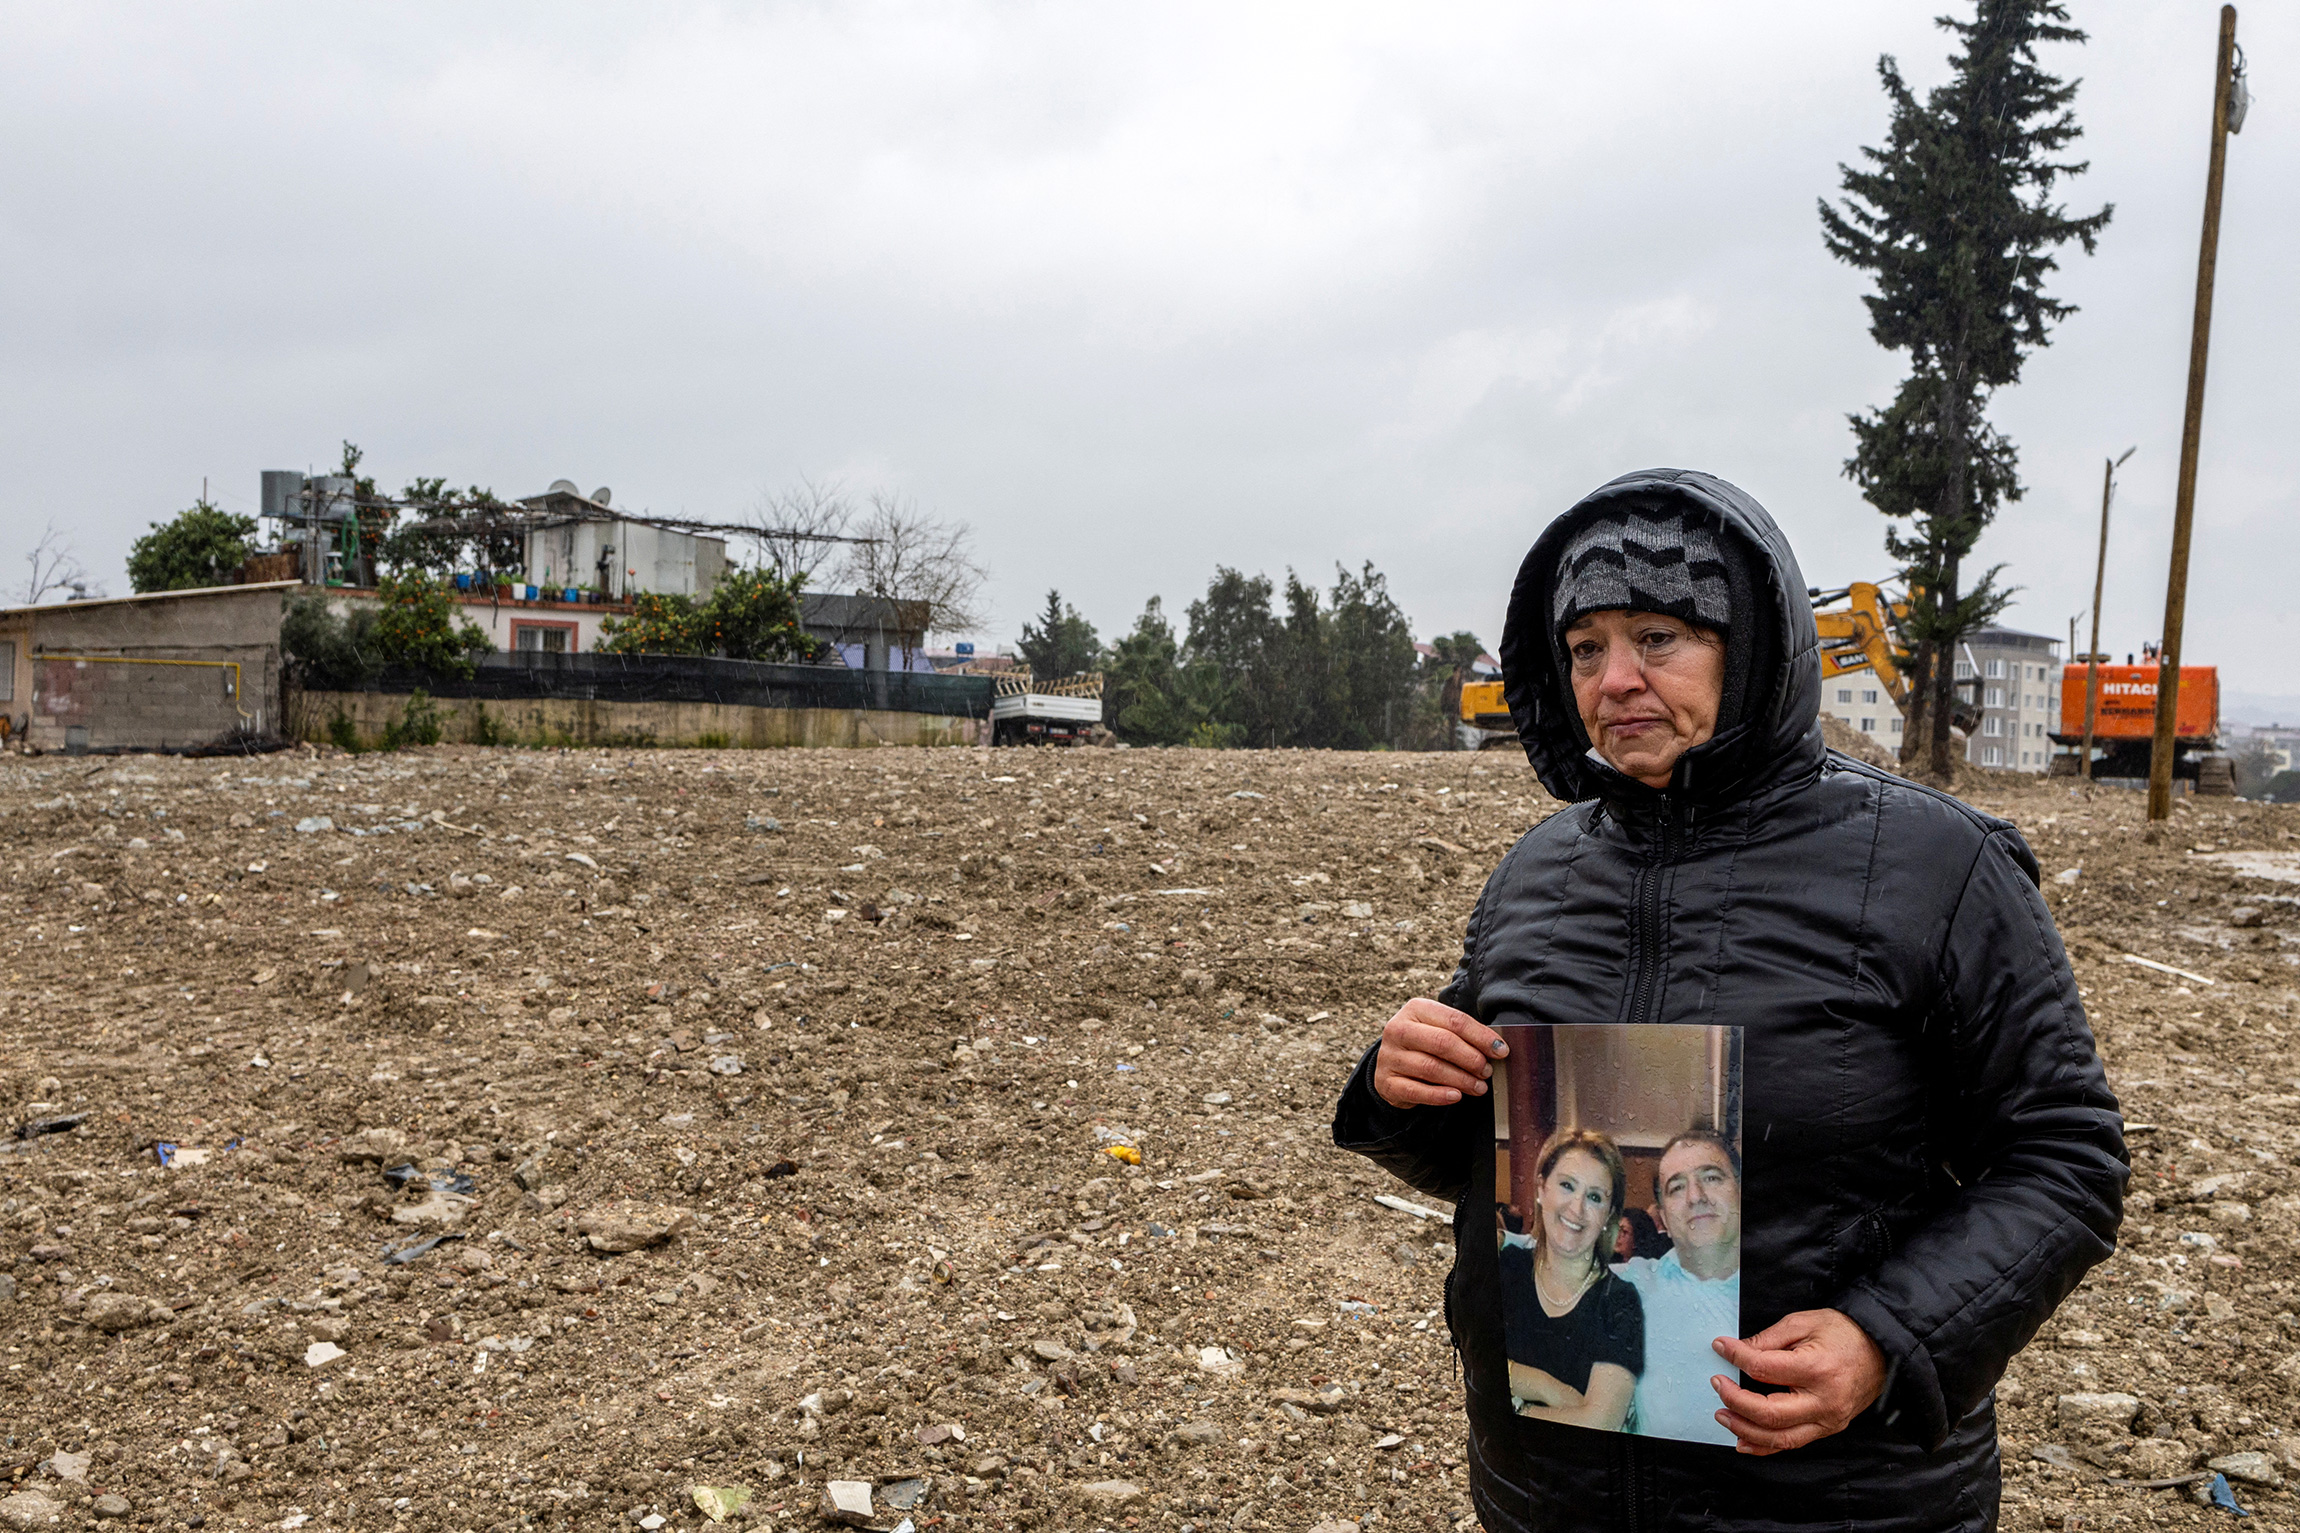 Айсун Челенк держит фотографию сестры Берны и ее мужа Кемаля, которые пропали без вести во время землетрясения, фото сделано на месте их уже снесенного дома. Хатай, 30 января.